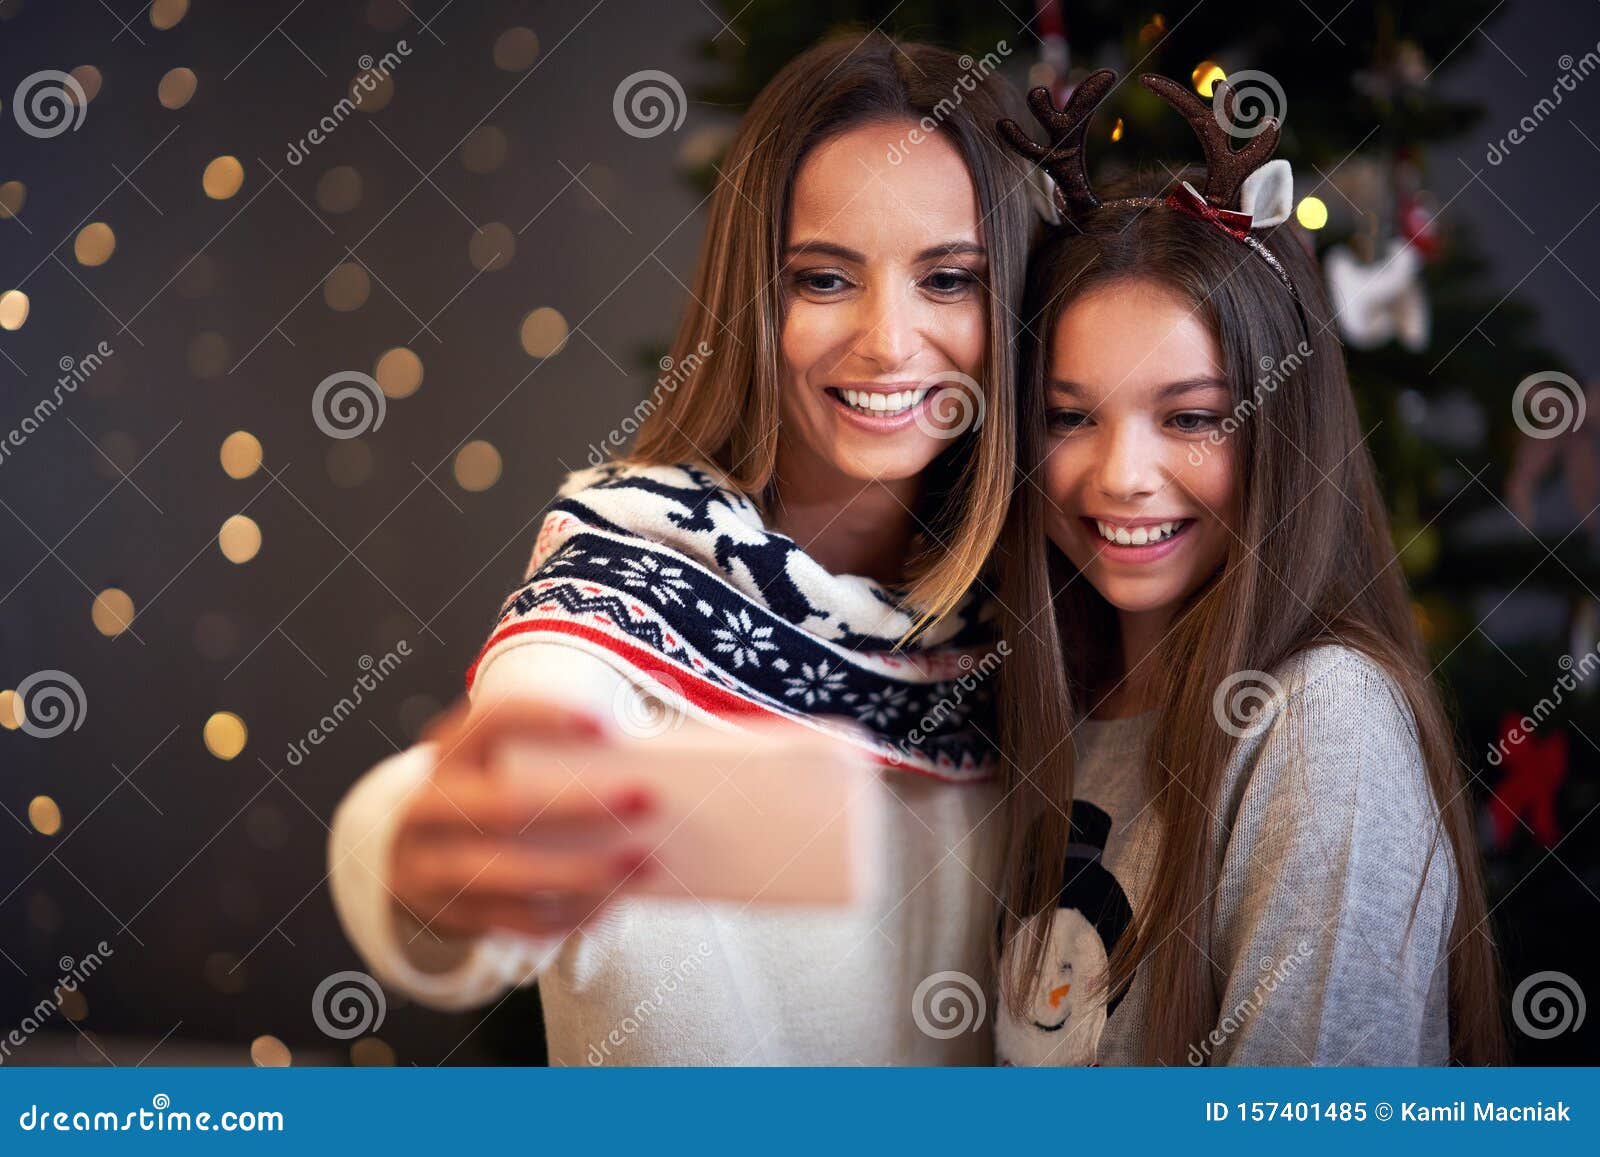 Madre E Hija Celebrando Navidad En Casa Y Tomando Selfie Imagen De Archivo Imagen De Navidad